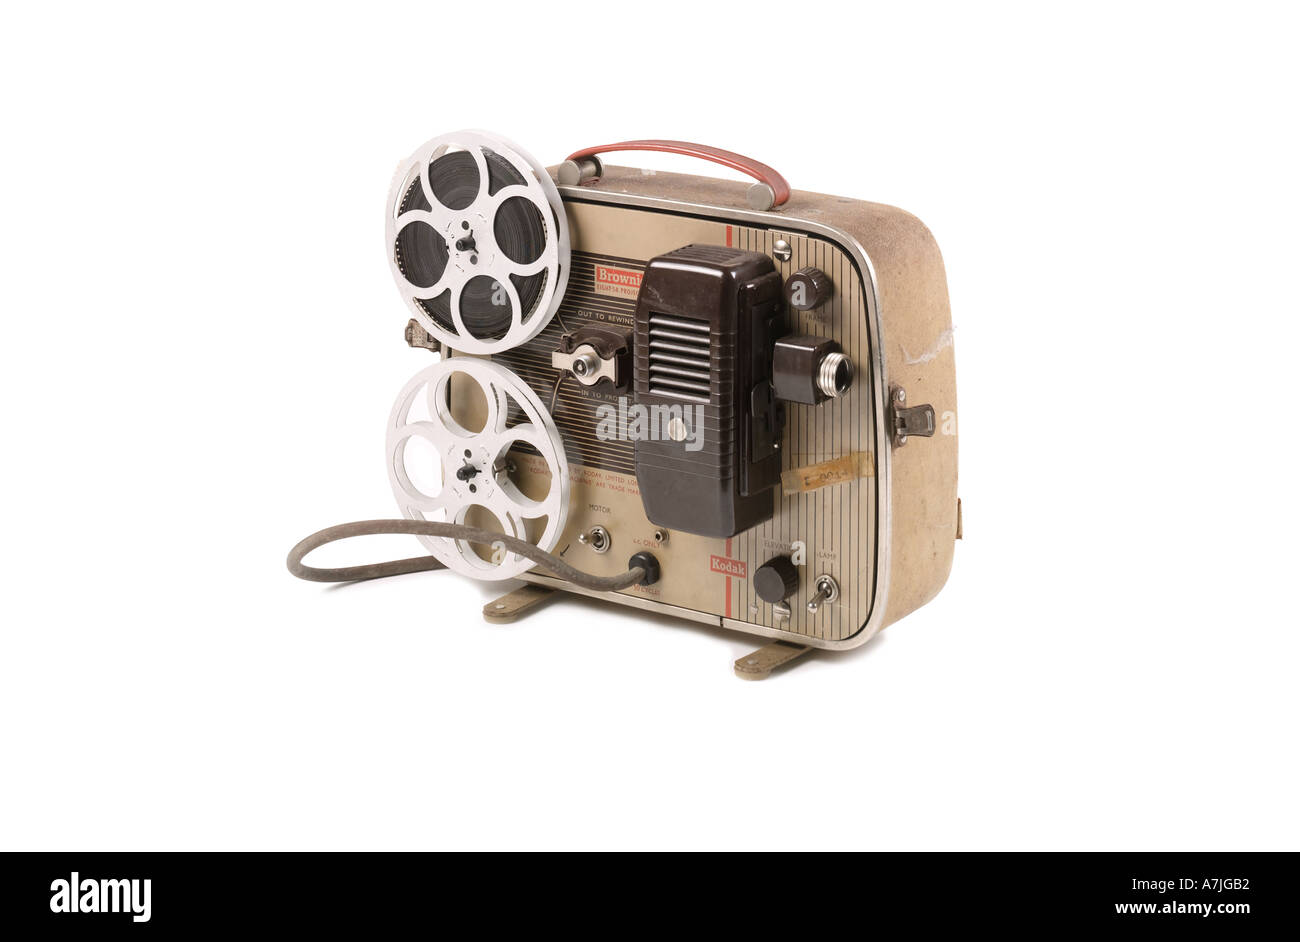 Creo que estoy enfermo portugués intercambiar Antigua 1950 8mm proyector de cine Kodak sobre fondo blanco Fotografía de  stock - Alamy